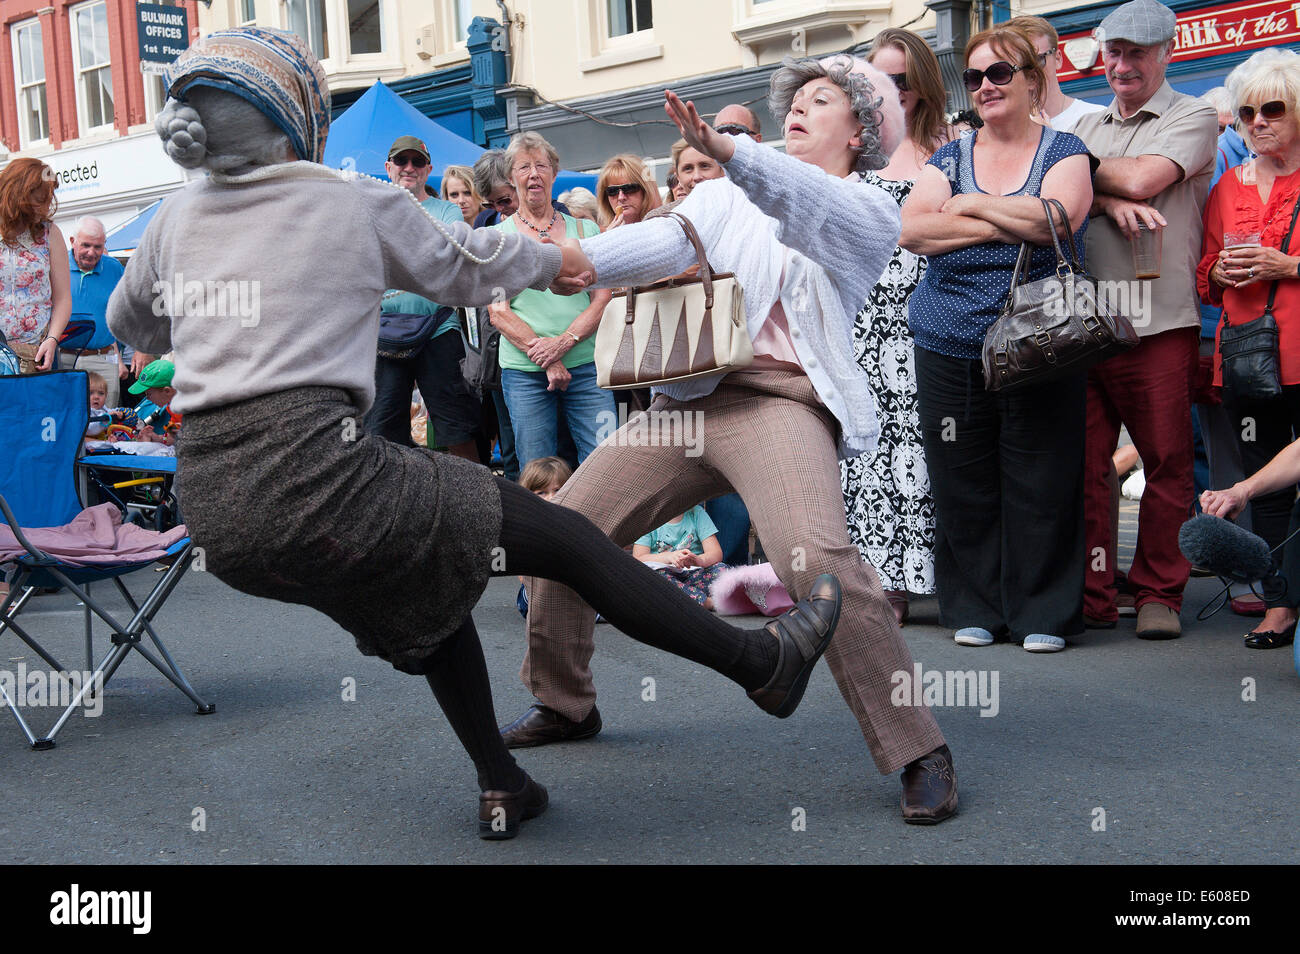 Brecon, Powys, Wales, UK. 9 août 2014. Les deux Bessies divertir les foules lors de la 30e Festival de jazz de Brecon. Credit : Graham M. Lawrence/Alamy Live News. Banque D'Images